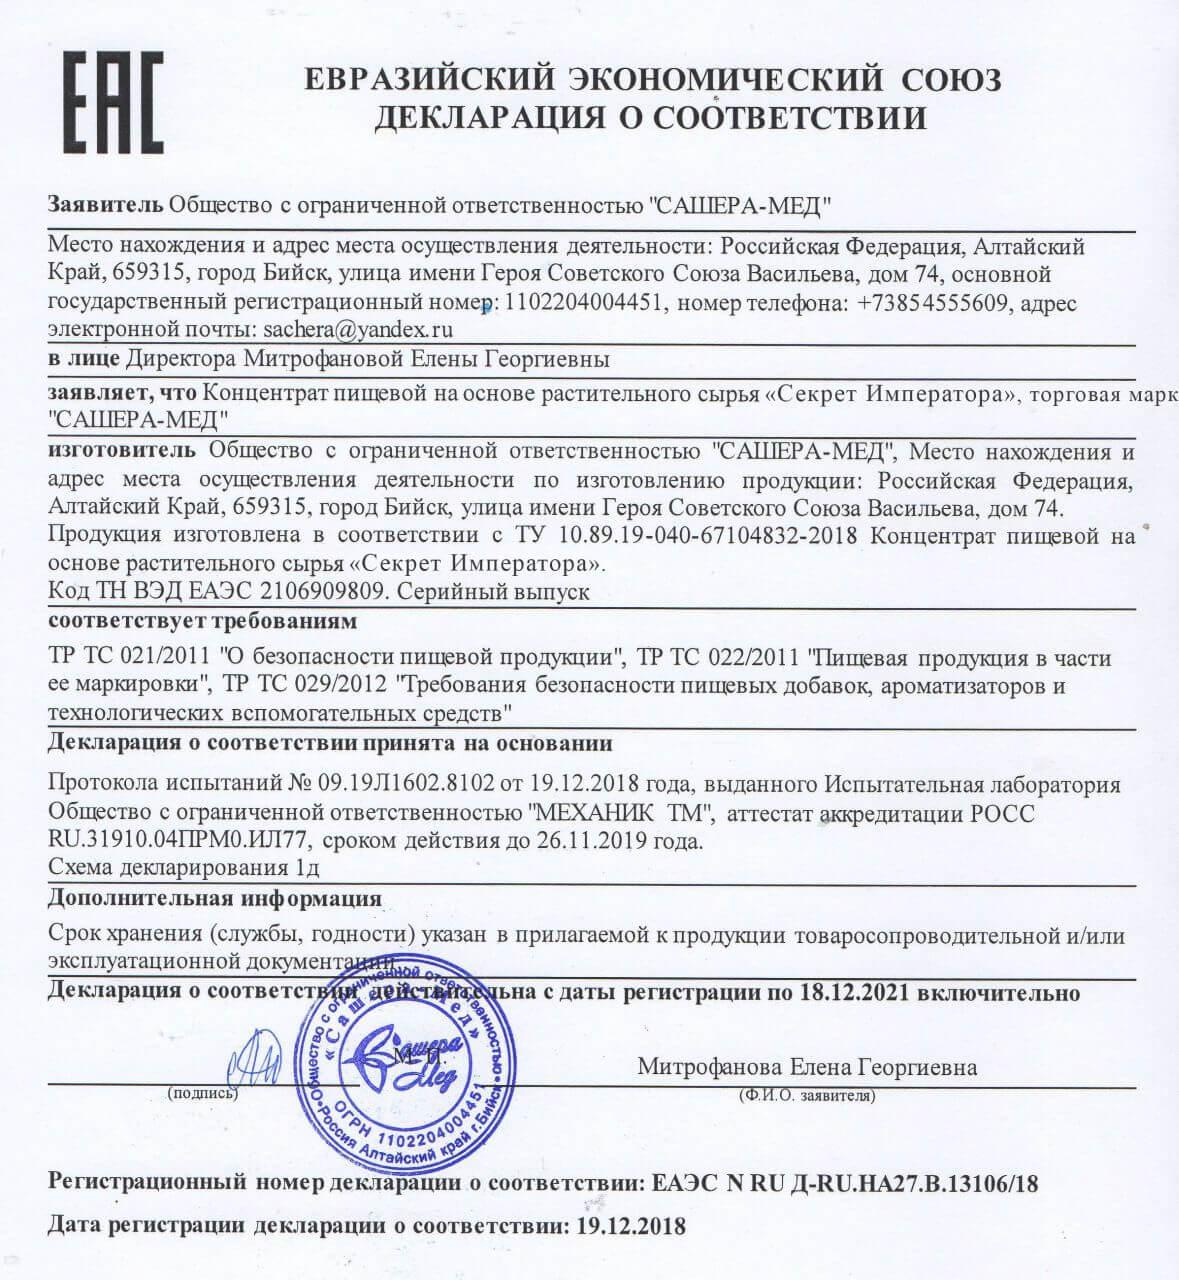 Сертификат на секрет императора в Москве